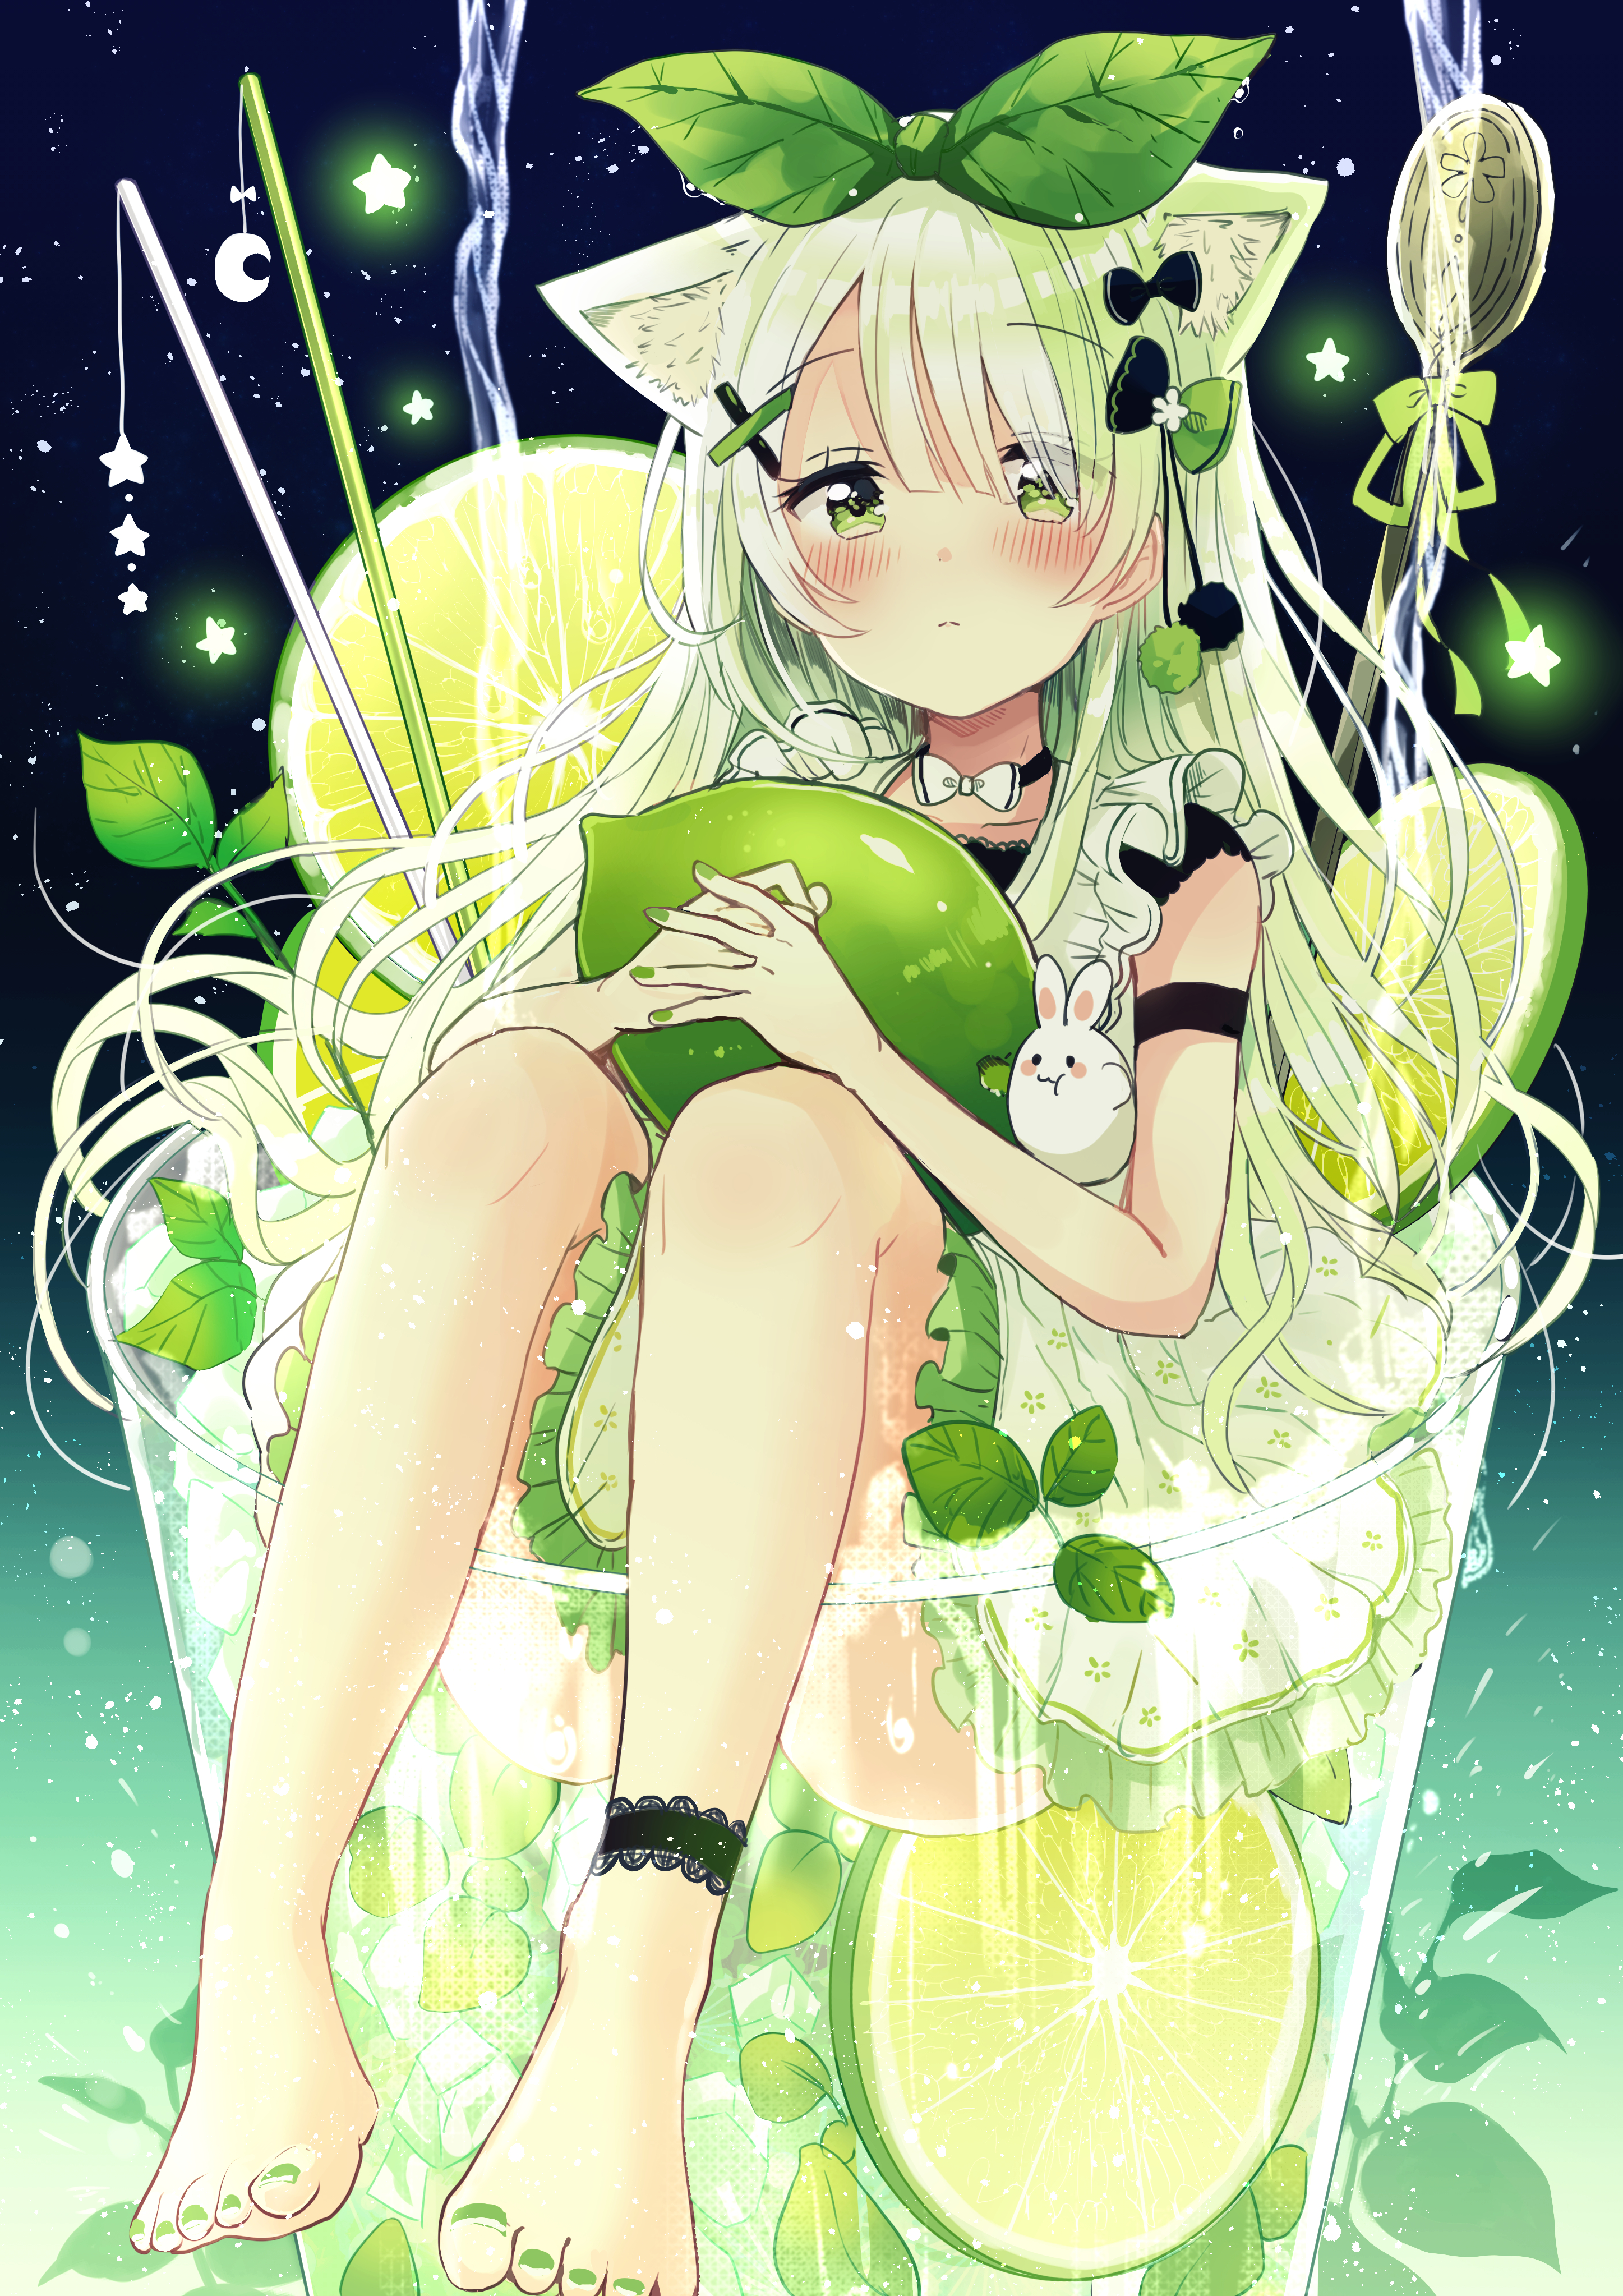 Anime 2894x4093 anime anime girls digital art artwork 2D portrait display Sakura Oriko minigirl animal ears green eyes green hair lemons glass